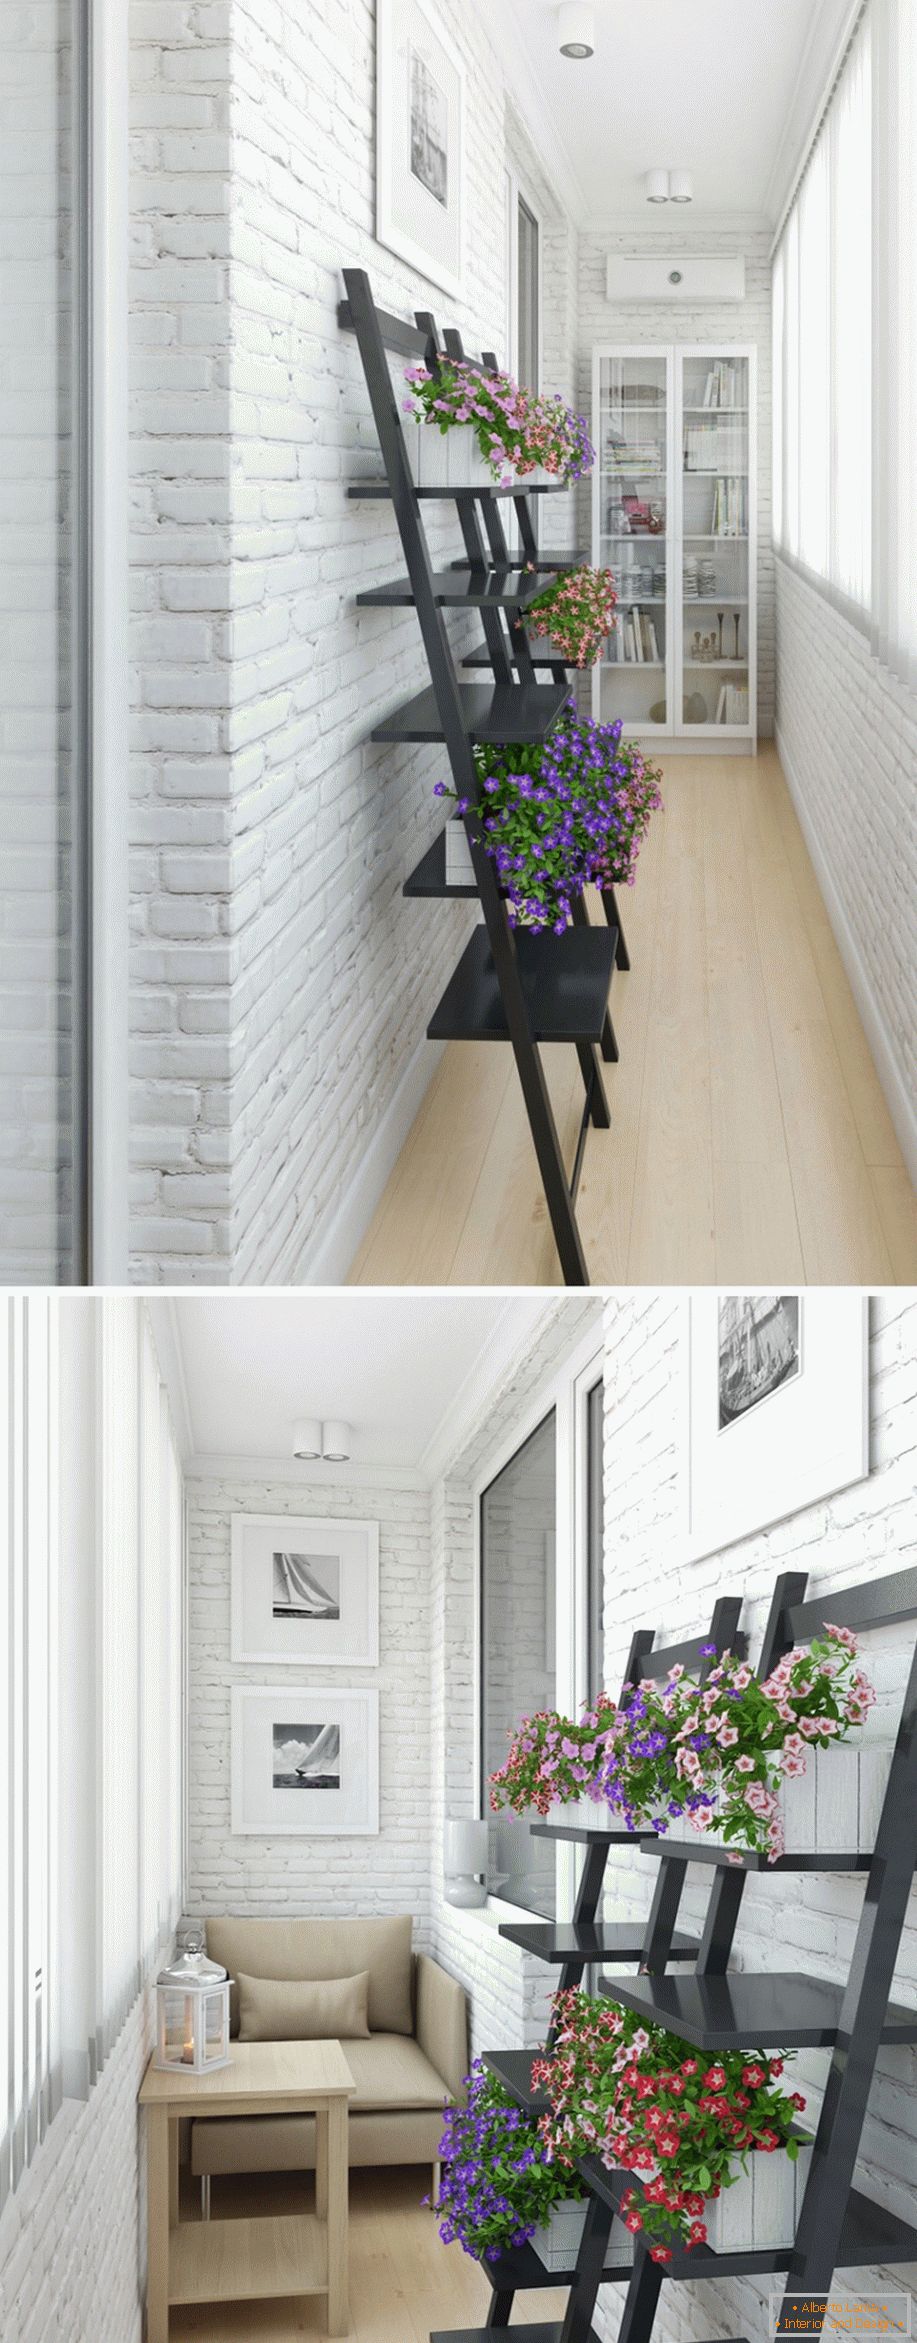 Moderan dizajn interijera malog stana